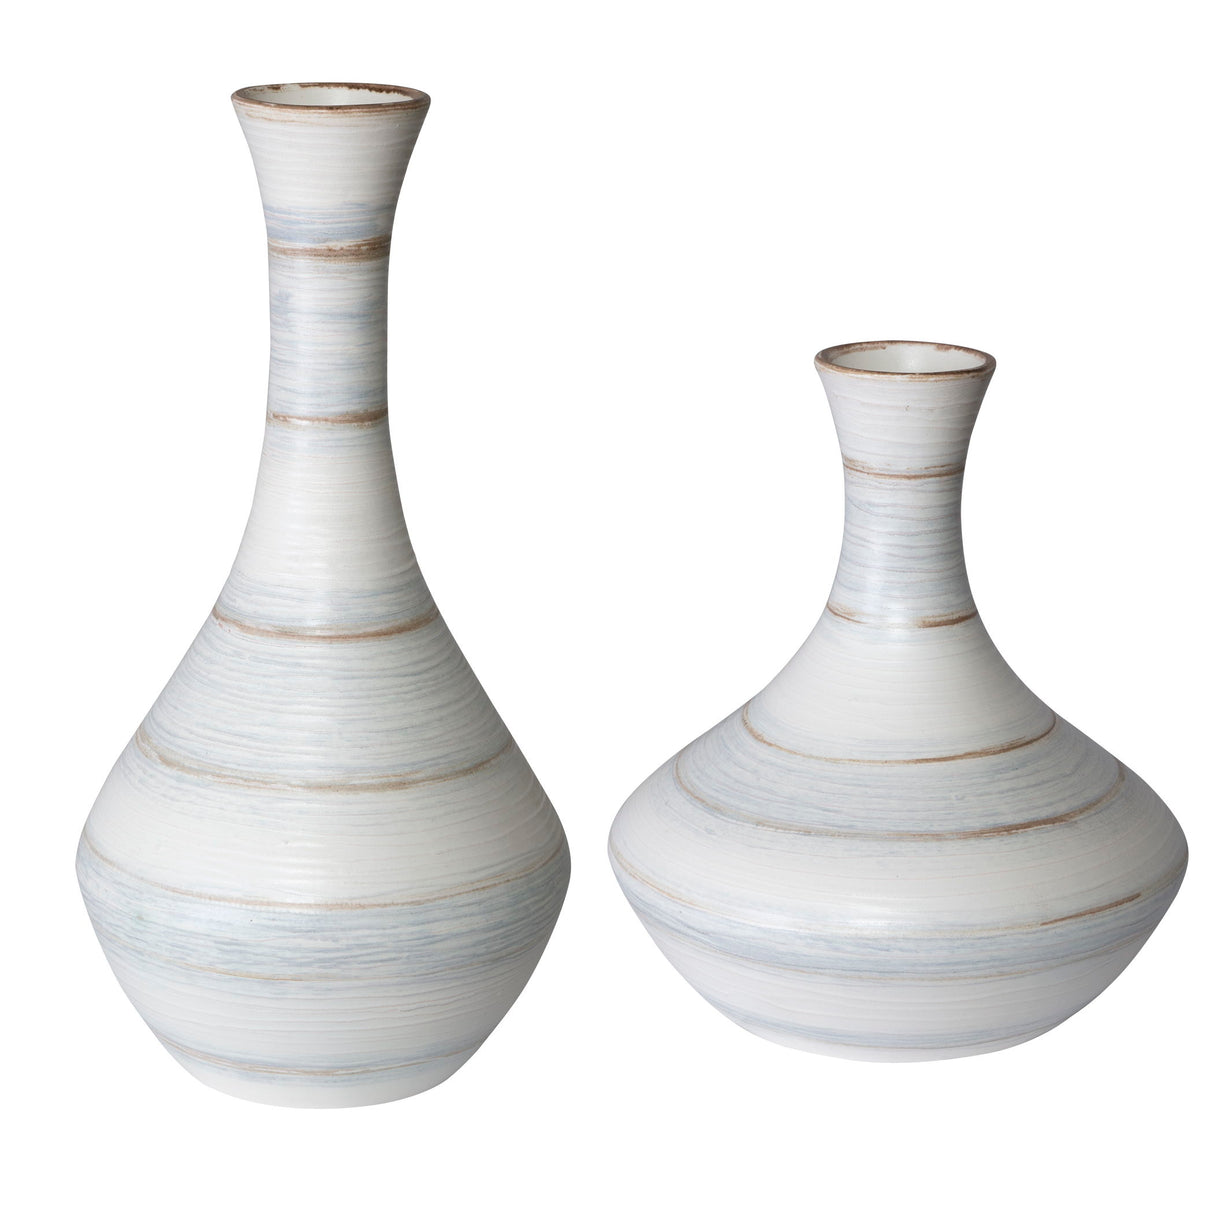 Potter - Fluted Striped Vases, Set Of 2 - Blue, Light